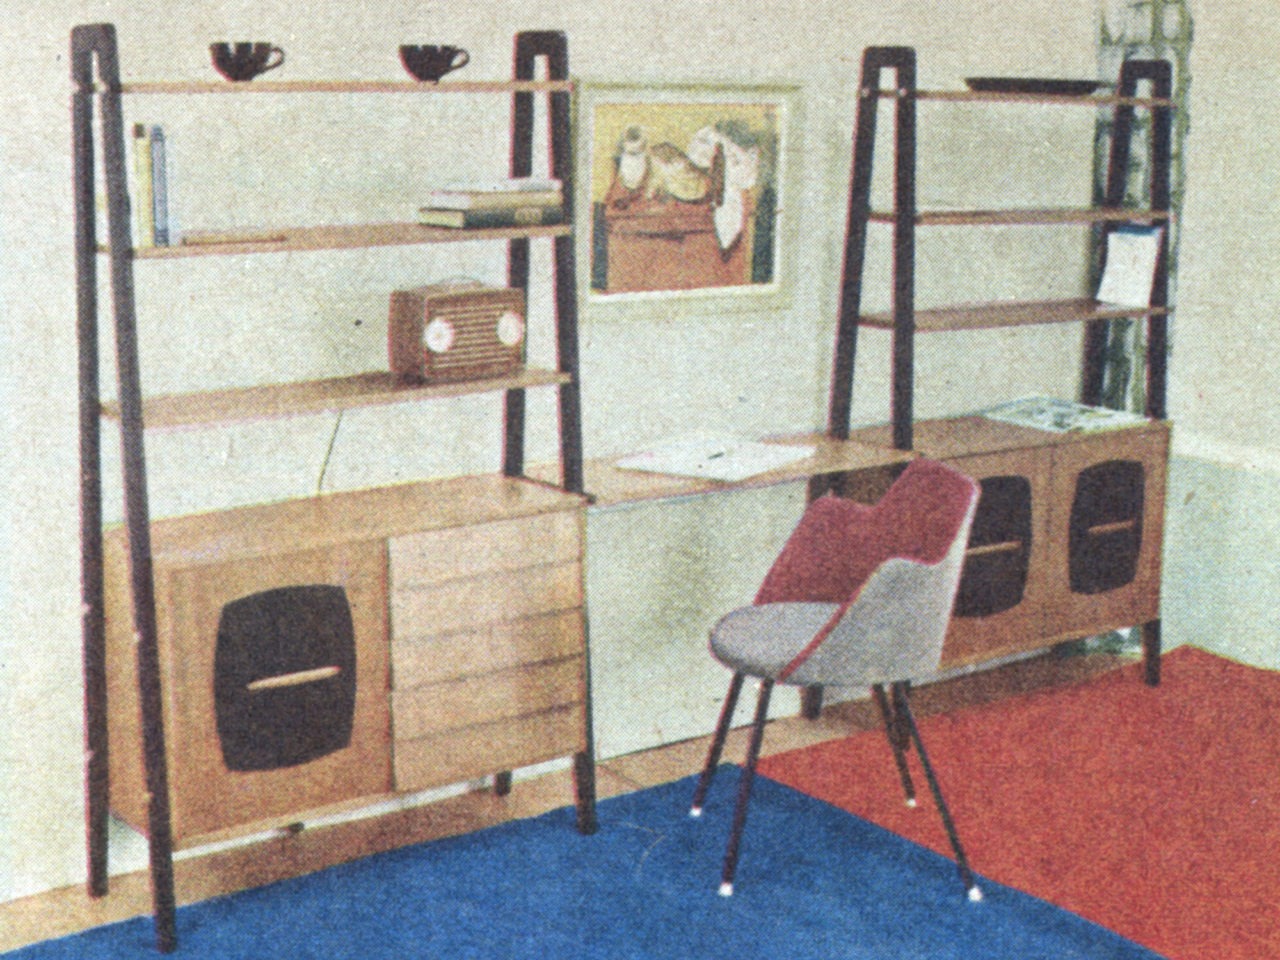 Silla junto a pieza de almacenaje con escritorio en la mitad, en un estilo ligero y funcional. Alfombra roja y azul.